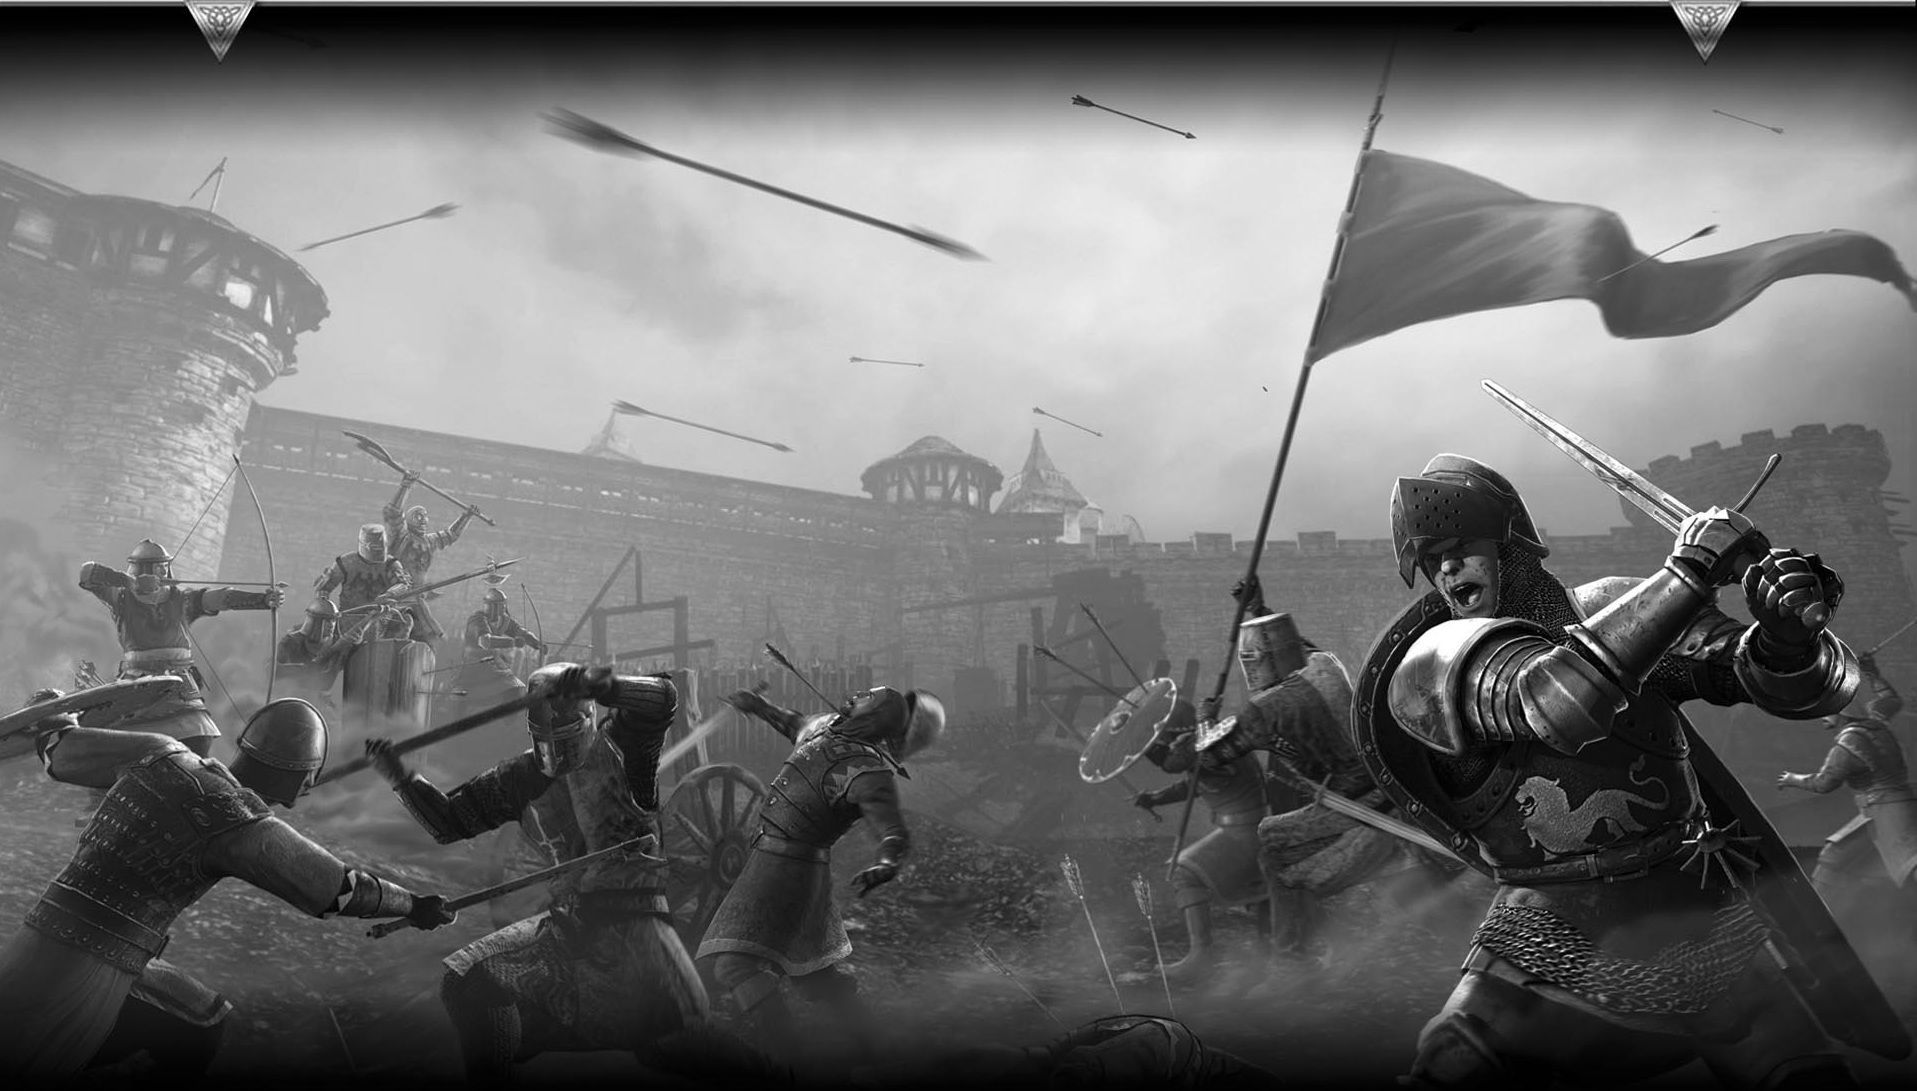 Medieval Fight Wallpaper | 1917x1091 | ID:25049